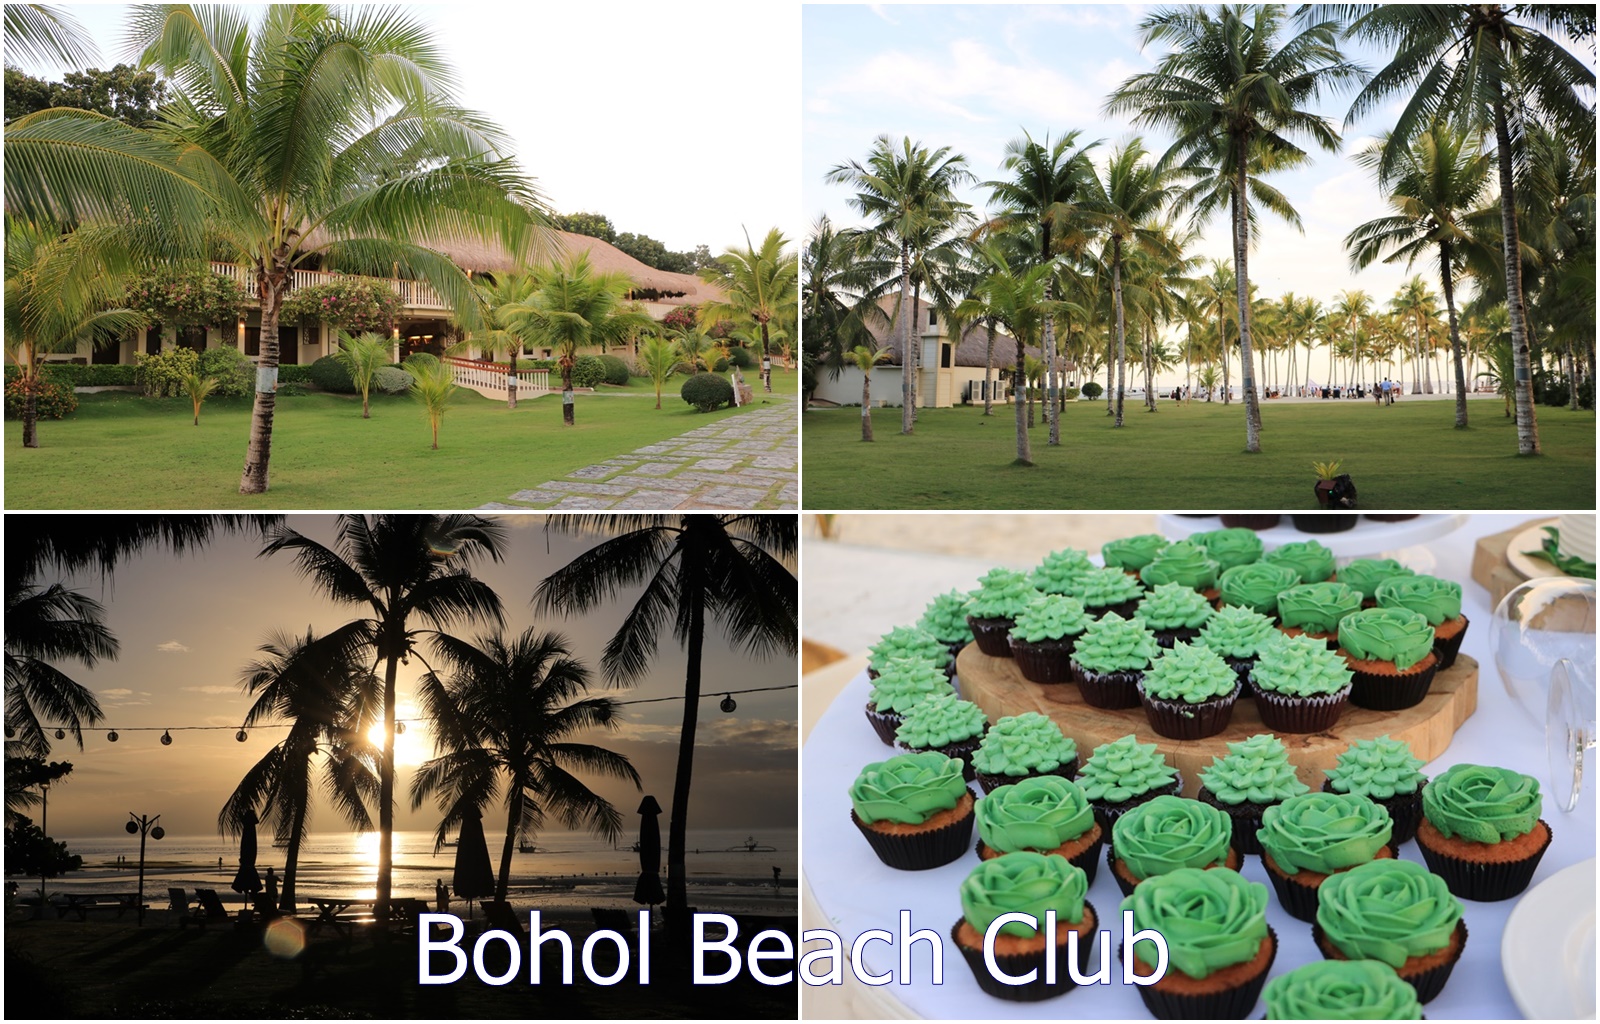 薄荷島住宿。Bohol Beach Club 薄荷海灘俱樂部渡假村 游泳、潛水、BBQ晚餐、免費晚餐秀表演